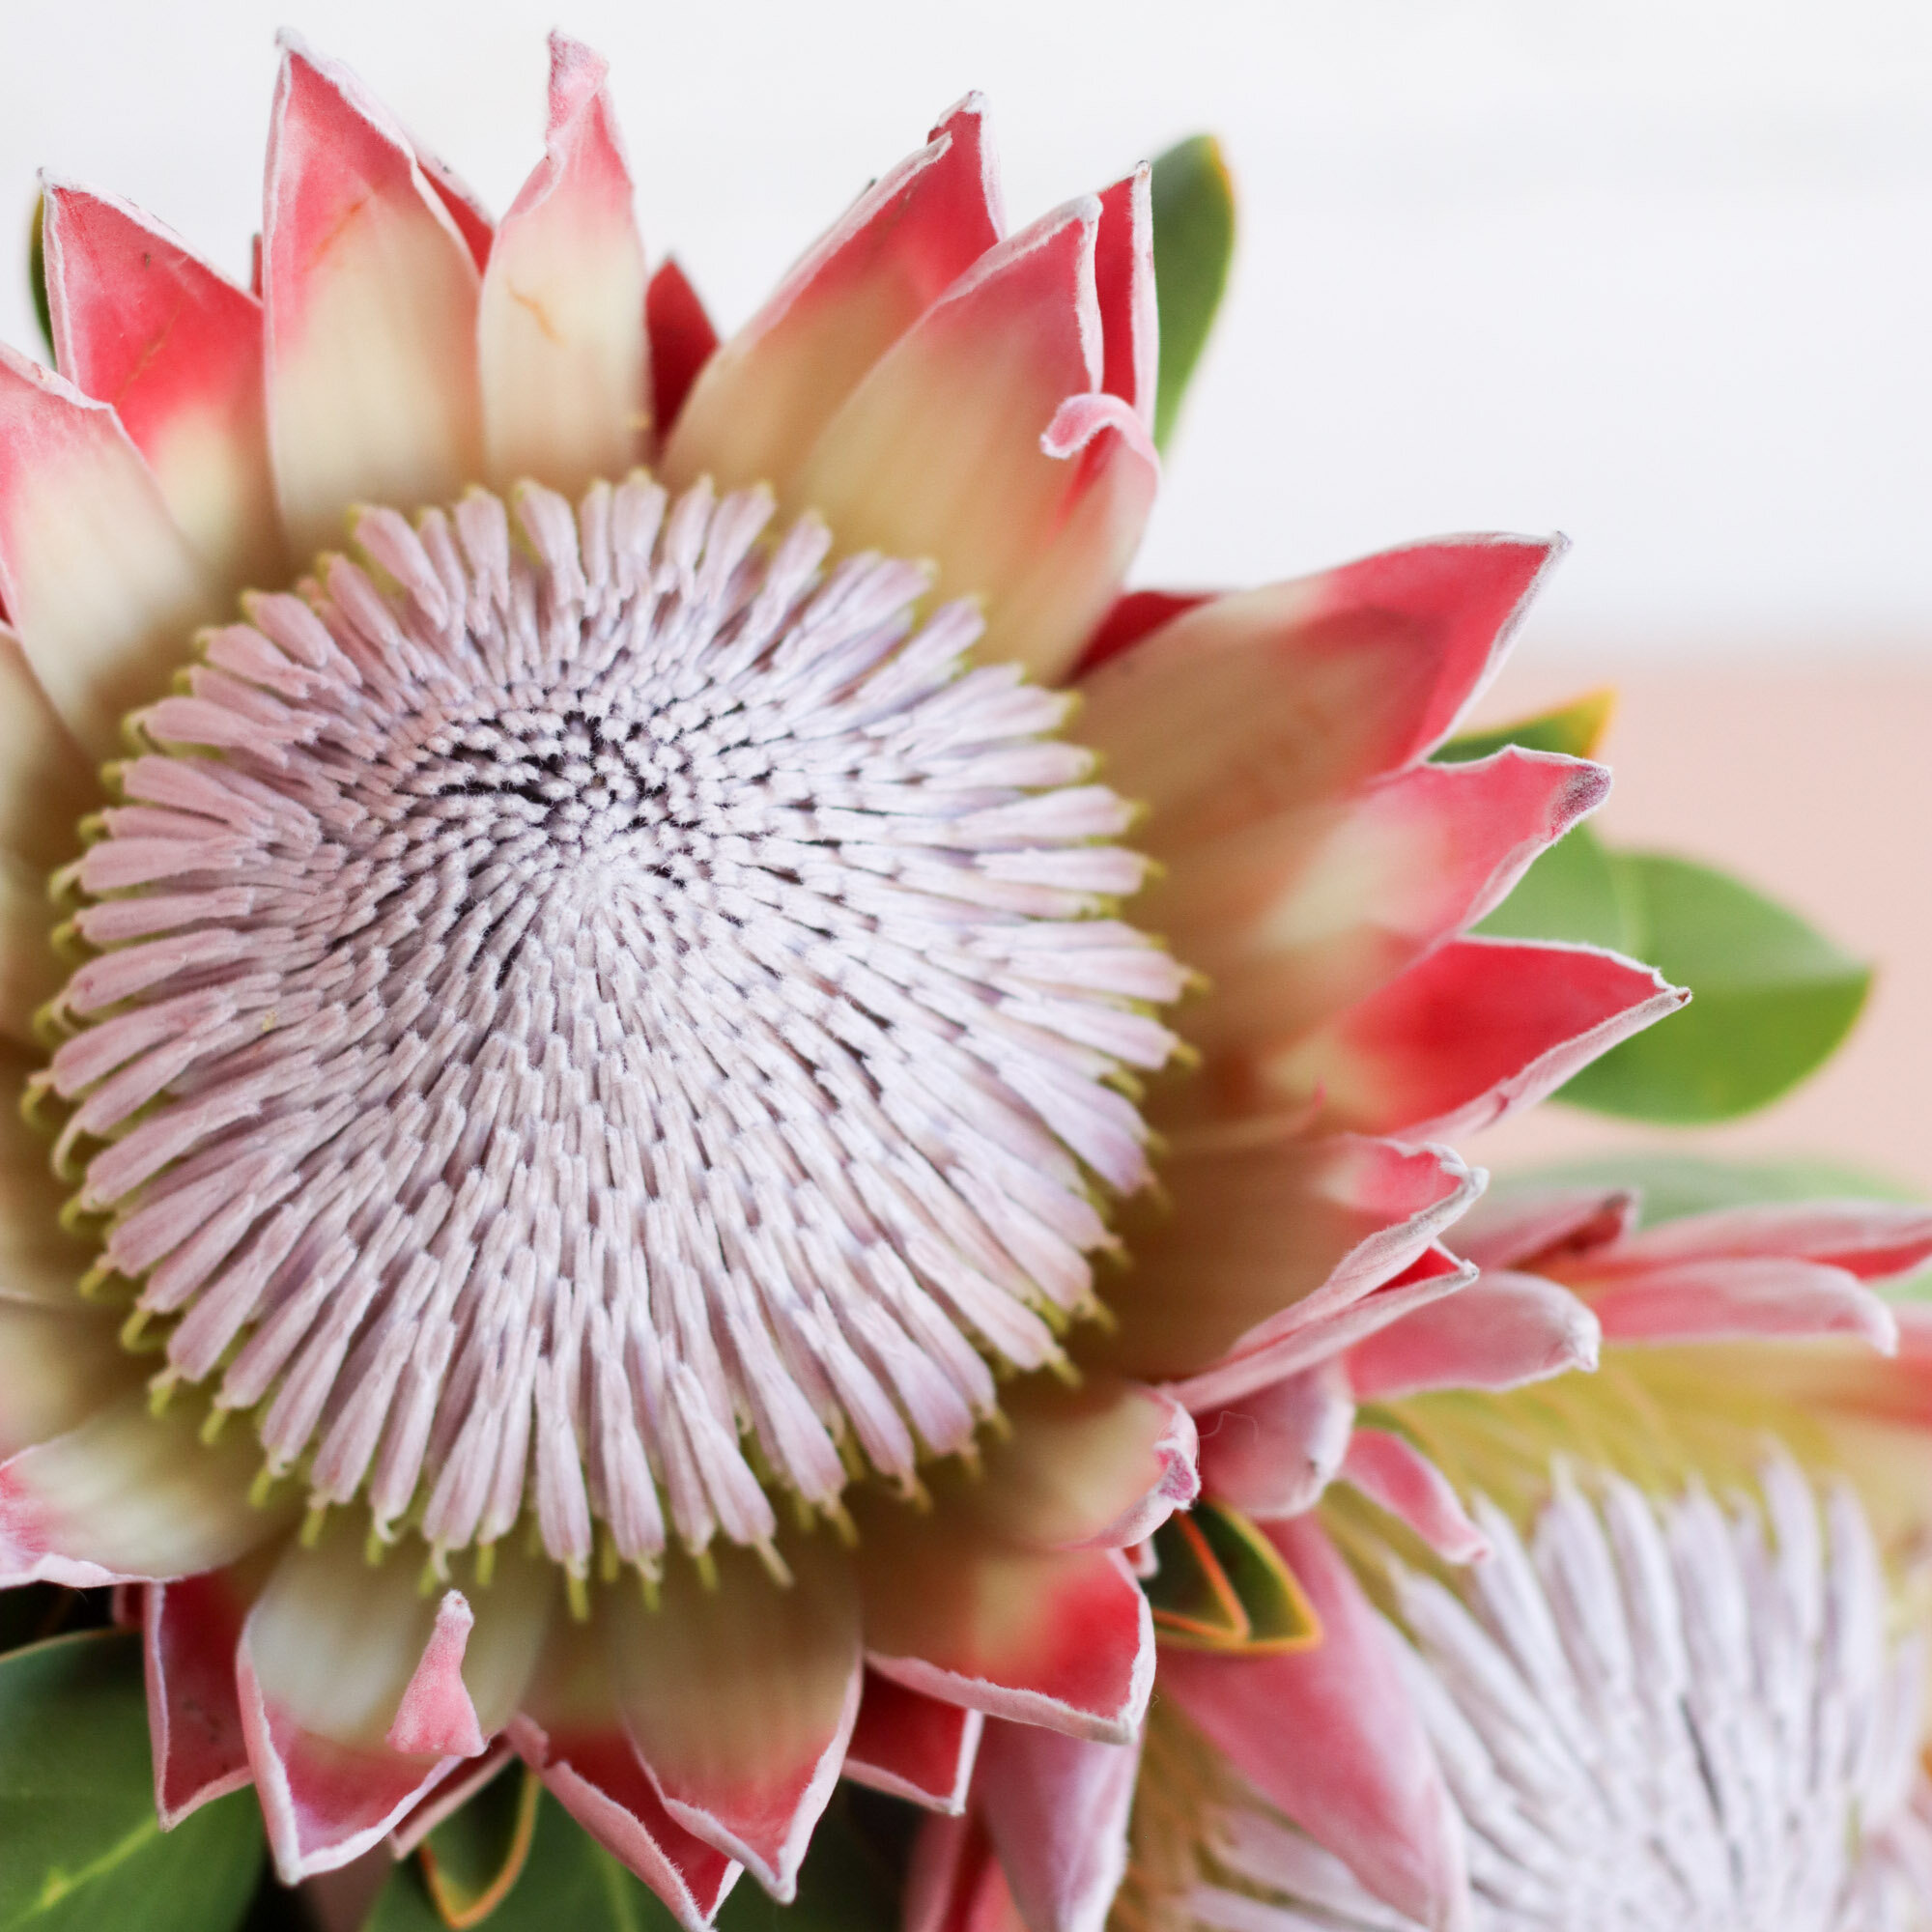 Protea Flower Care